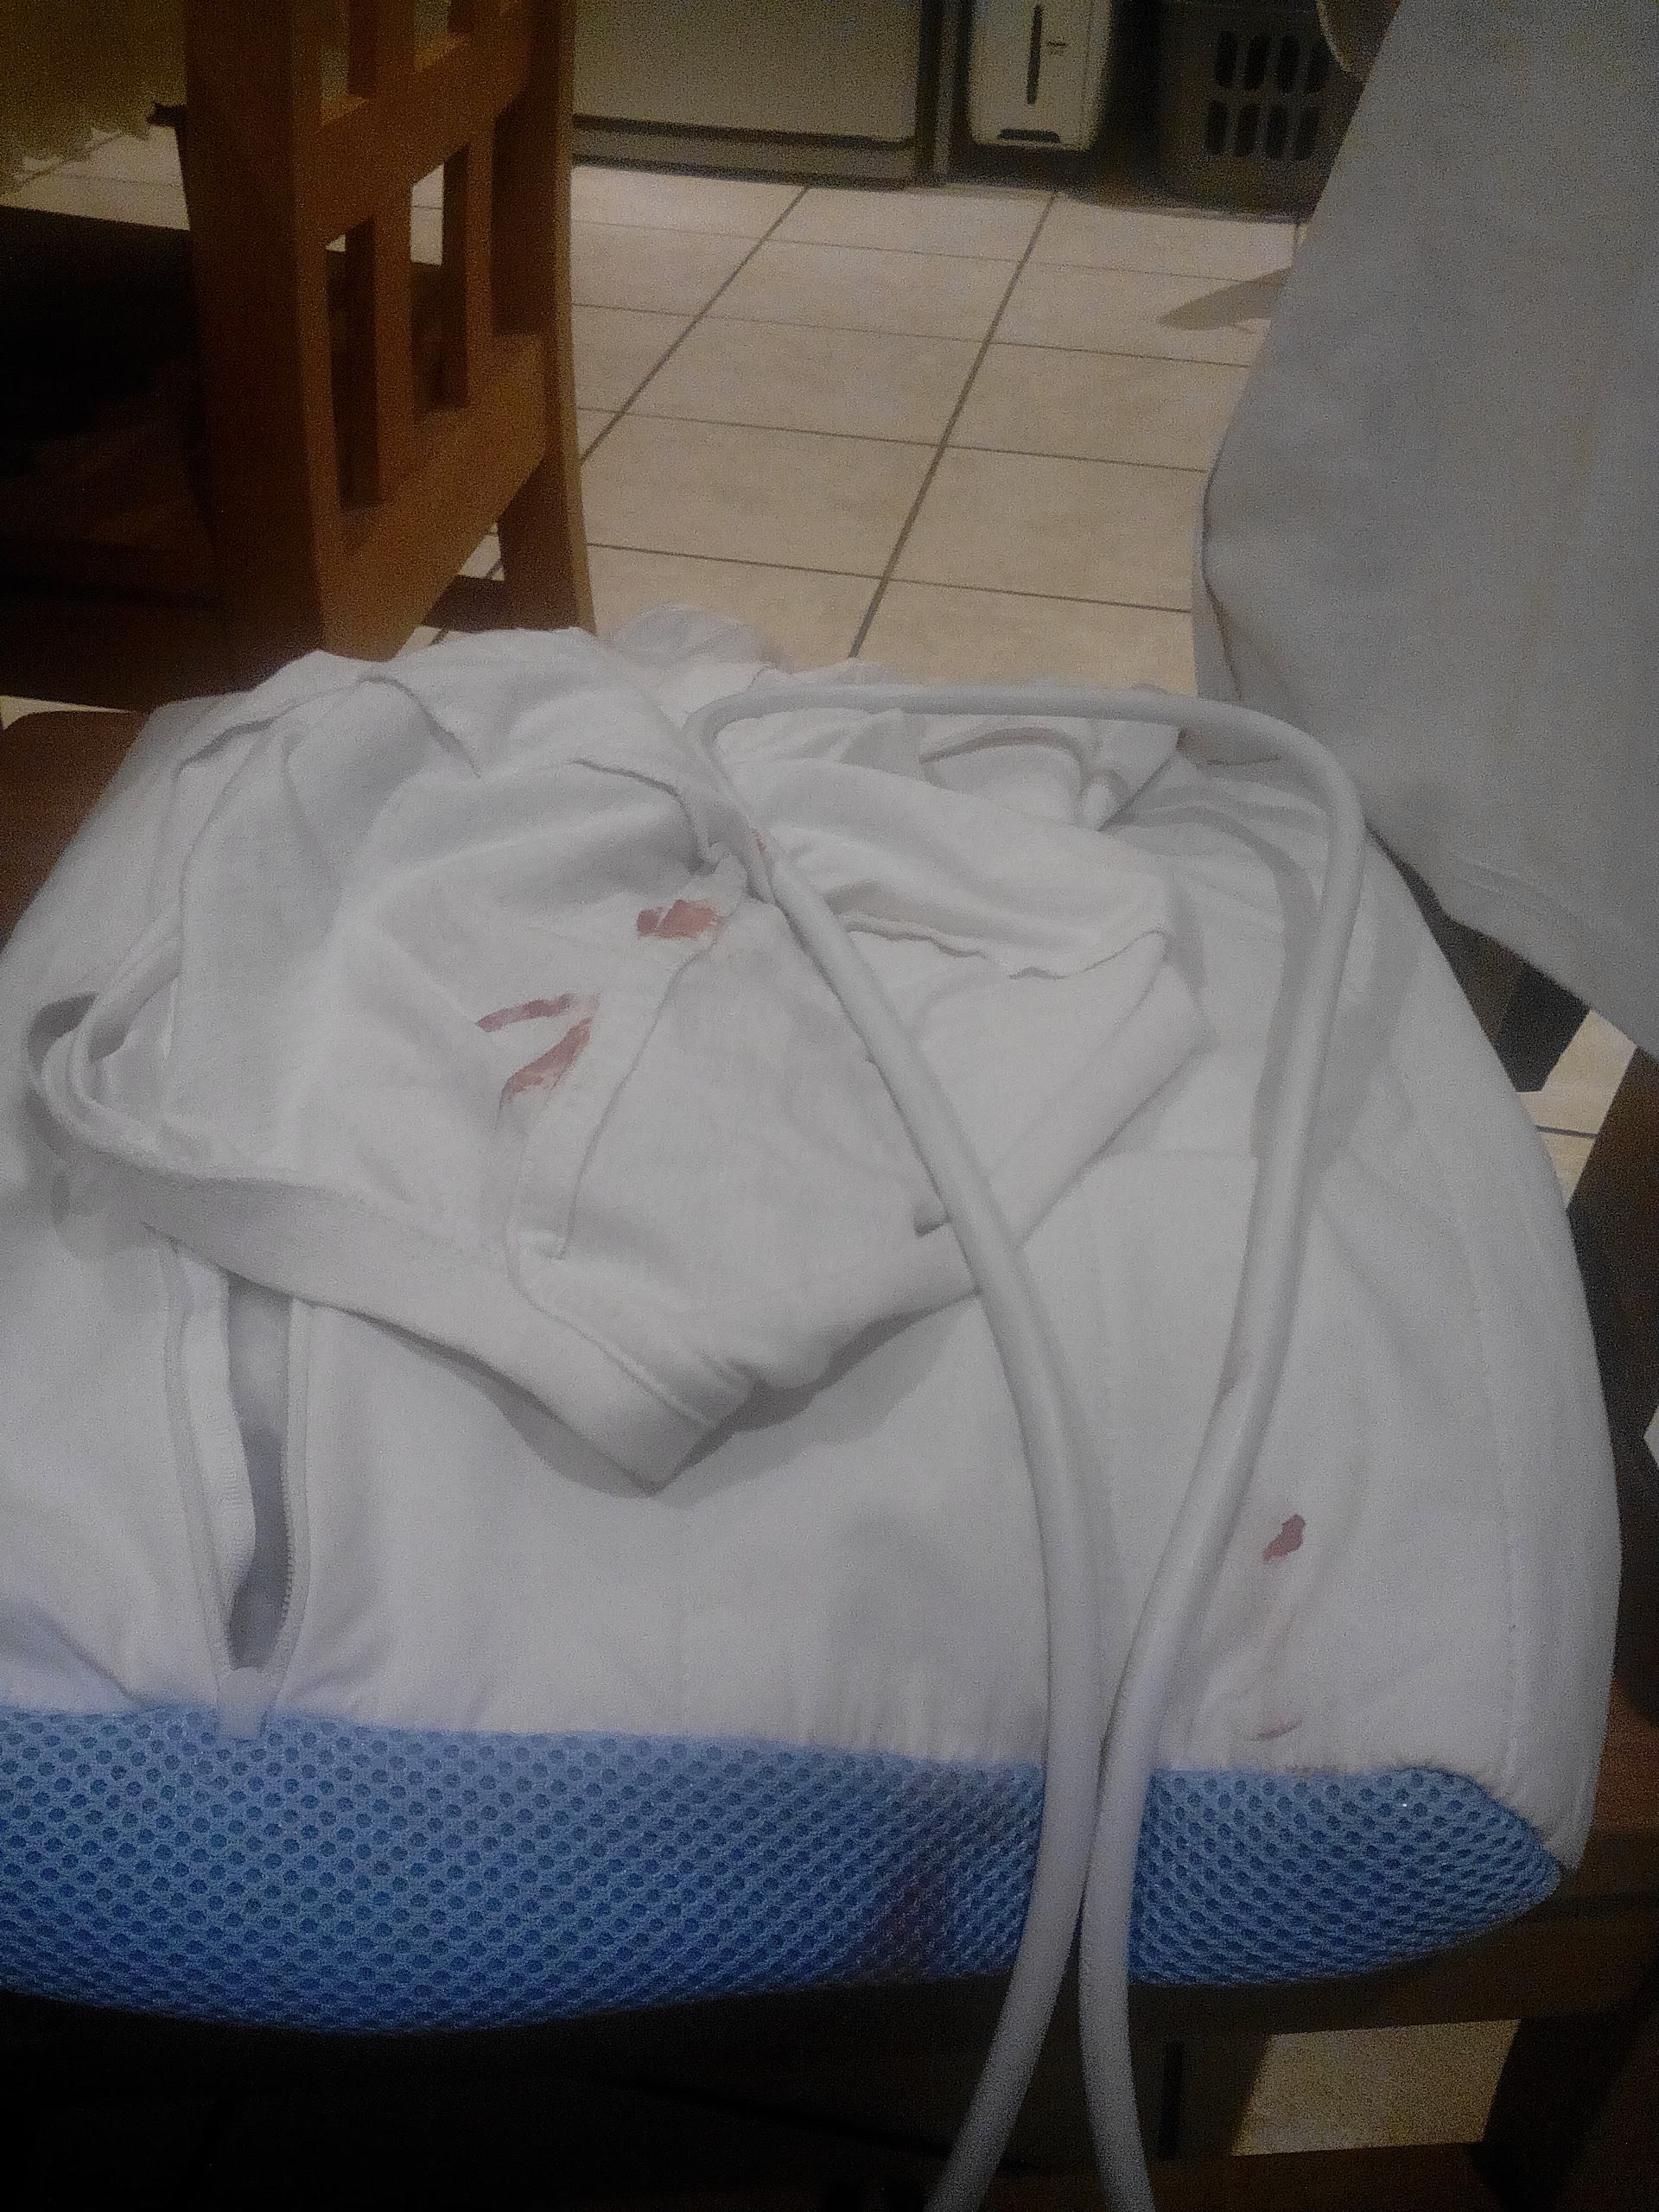 Elképesztő fordulat: a Budapest-London repülőjárat egy másik utasának ruhái is véresek lettek a bőröndben 